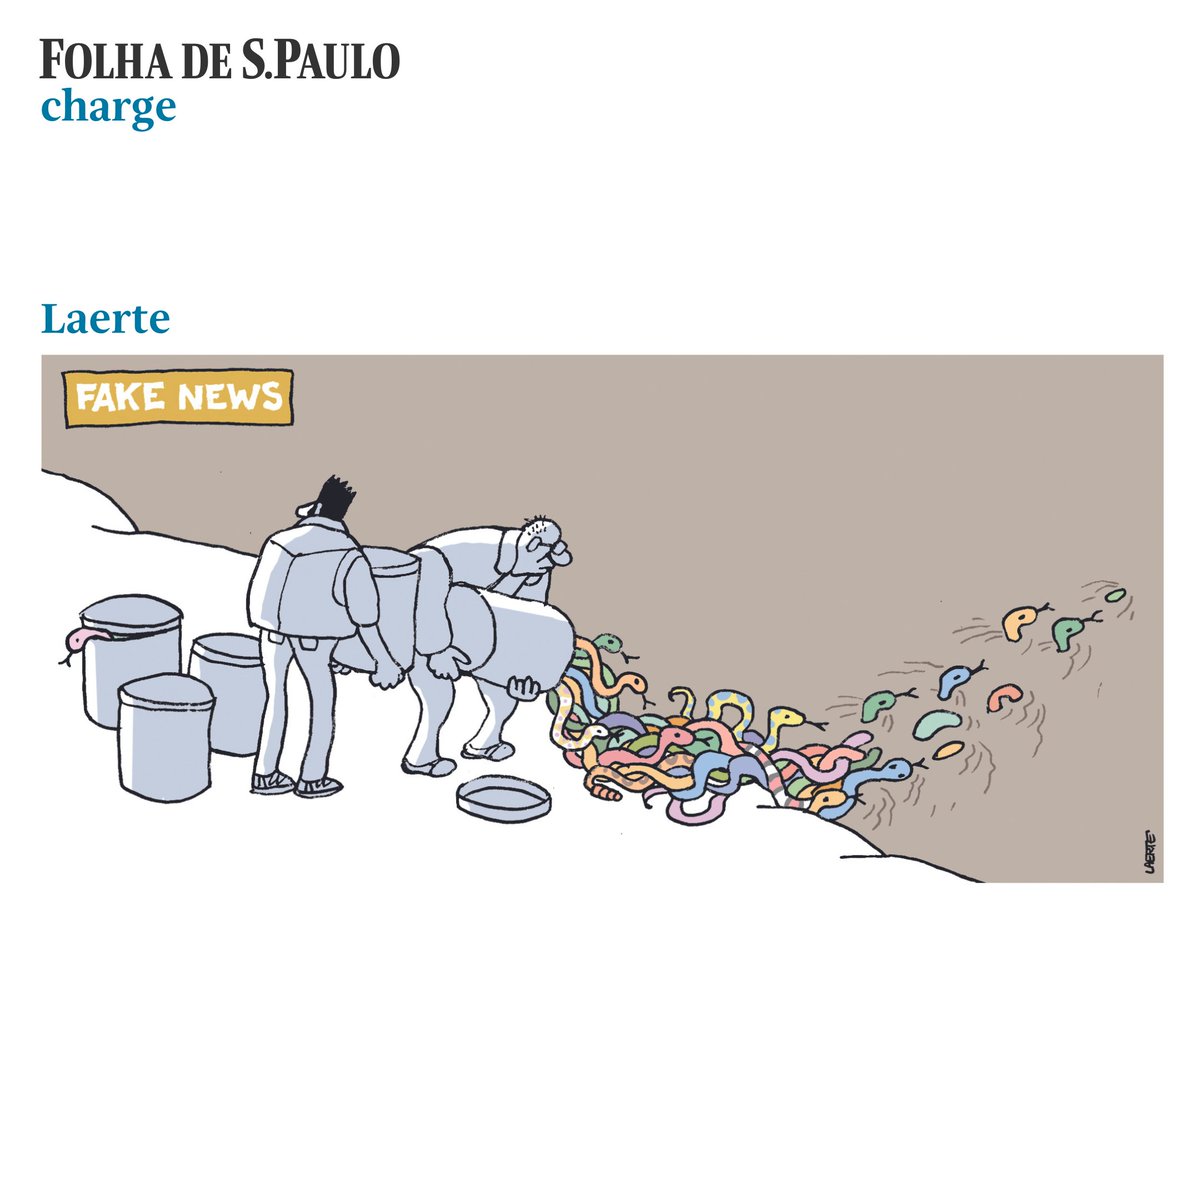 Esta é a charge de Laerte (@LaerteCoutinho1) publicada em todas as plataformas da Folha. Quer ver mais charges do jornal? Acesse folha.com/charges